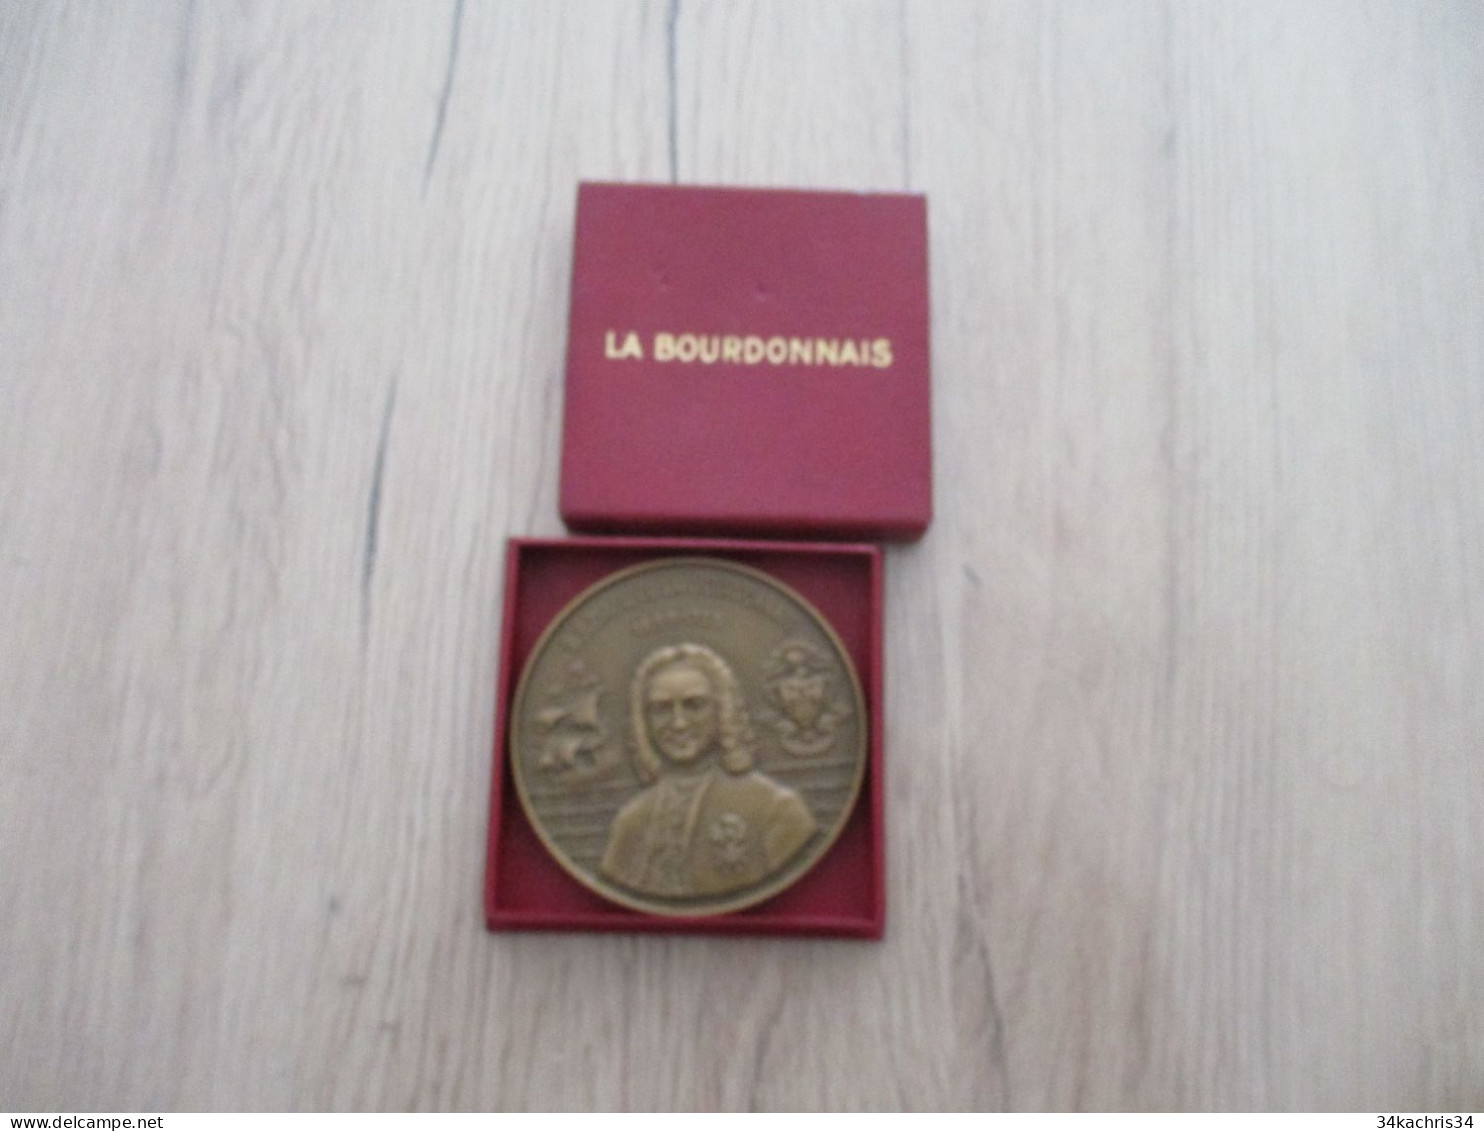 Médaille De Table La Bourdonnais Compagnies Messageries Maritimes 1953 5.5 Diam 100g Environs Dans Sa Boite - Décoration Maritime